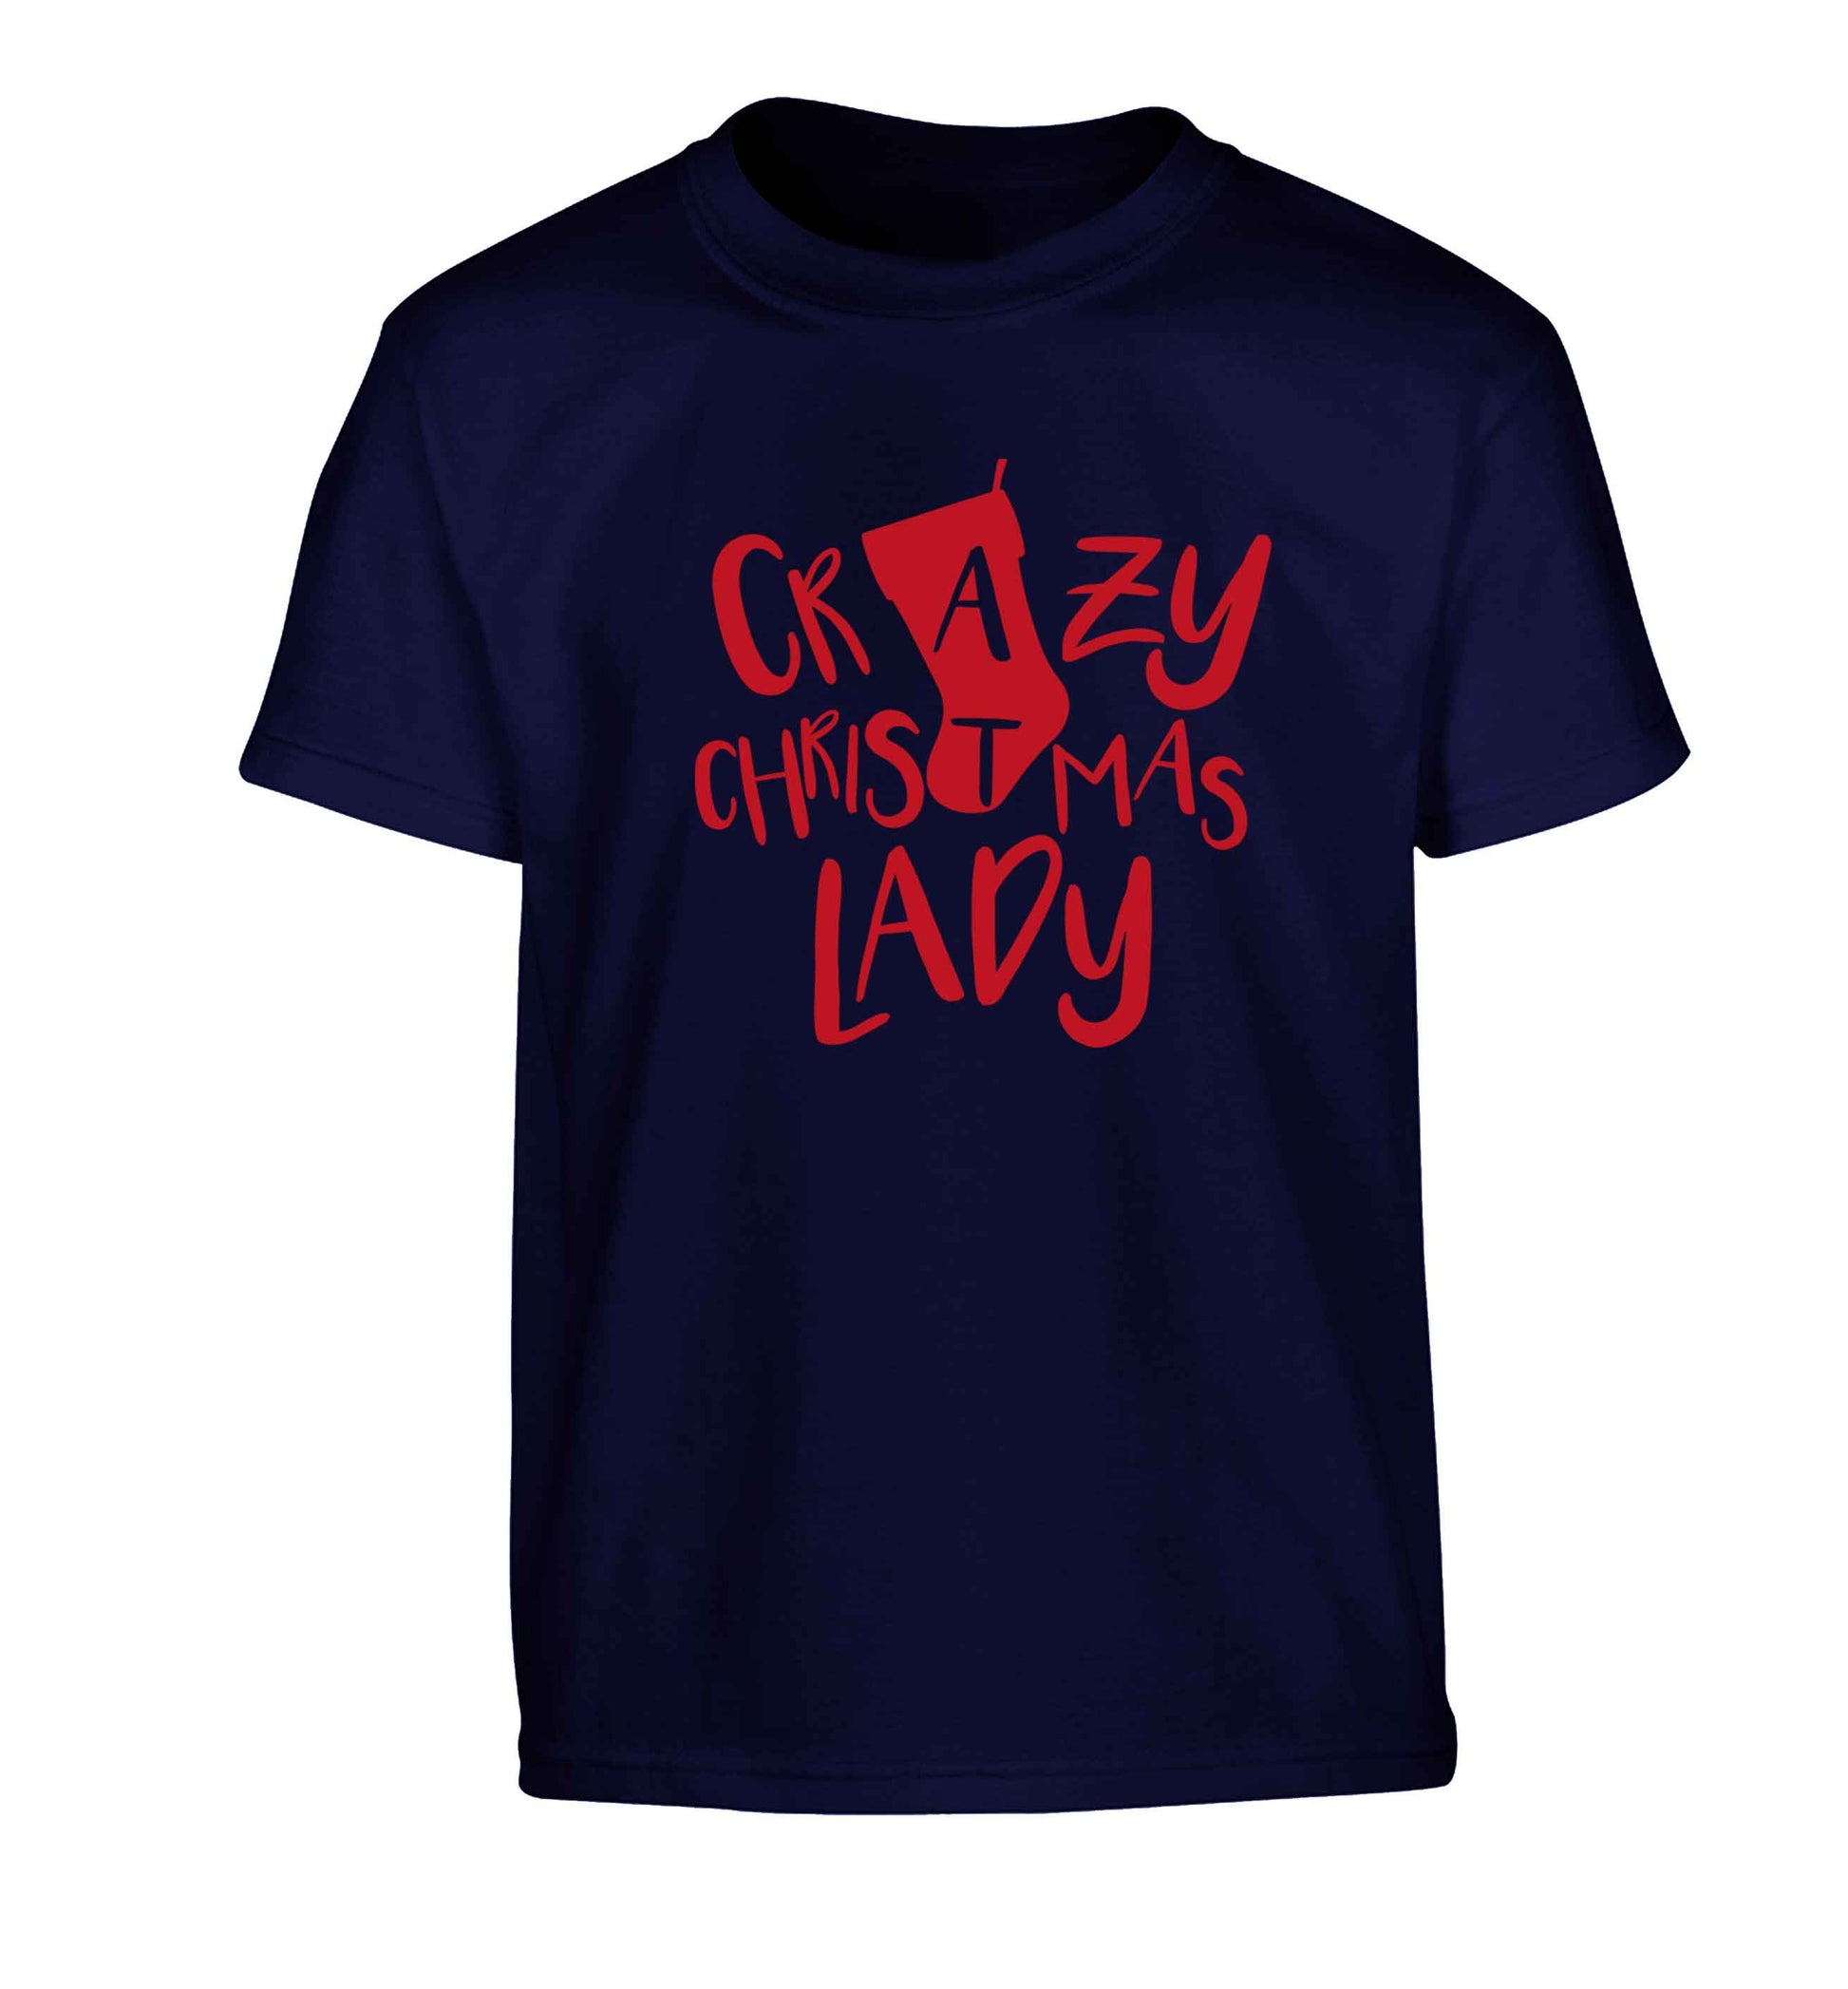 Crazy Christmas Dude Children's navy Tshirt 12-13 Years